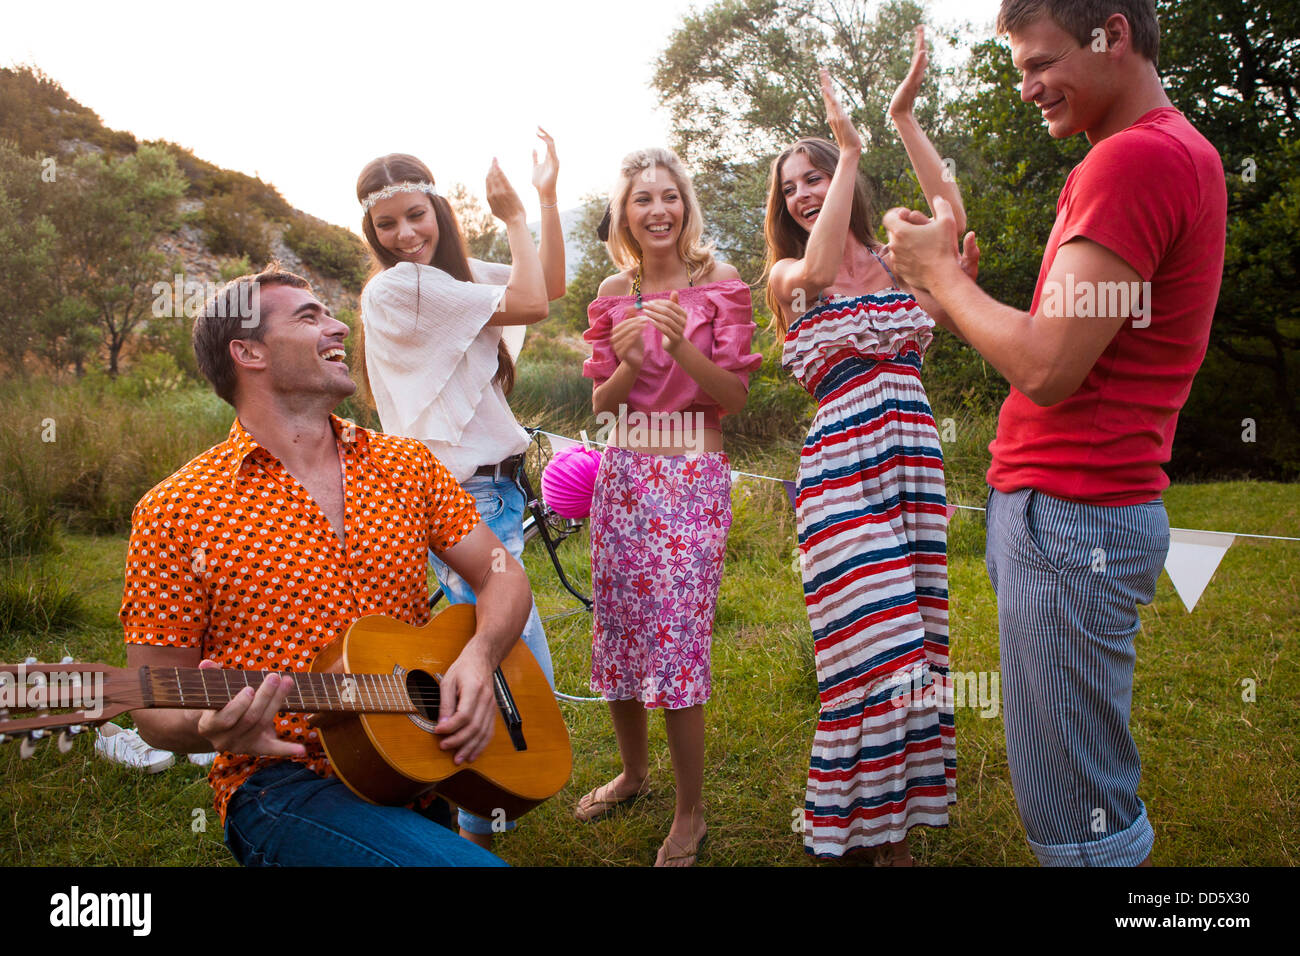 Croatia, Dalmatia, Young man playing guitar, women cheering Stock Photo